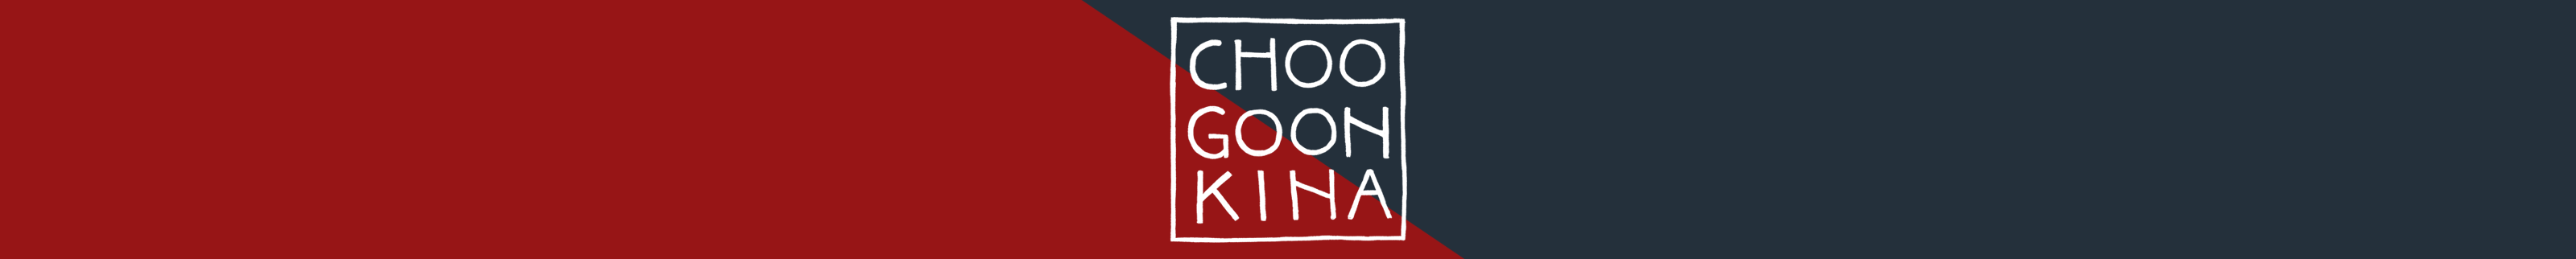 Kato Choogoonkina's profile banner